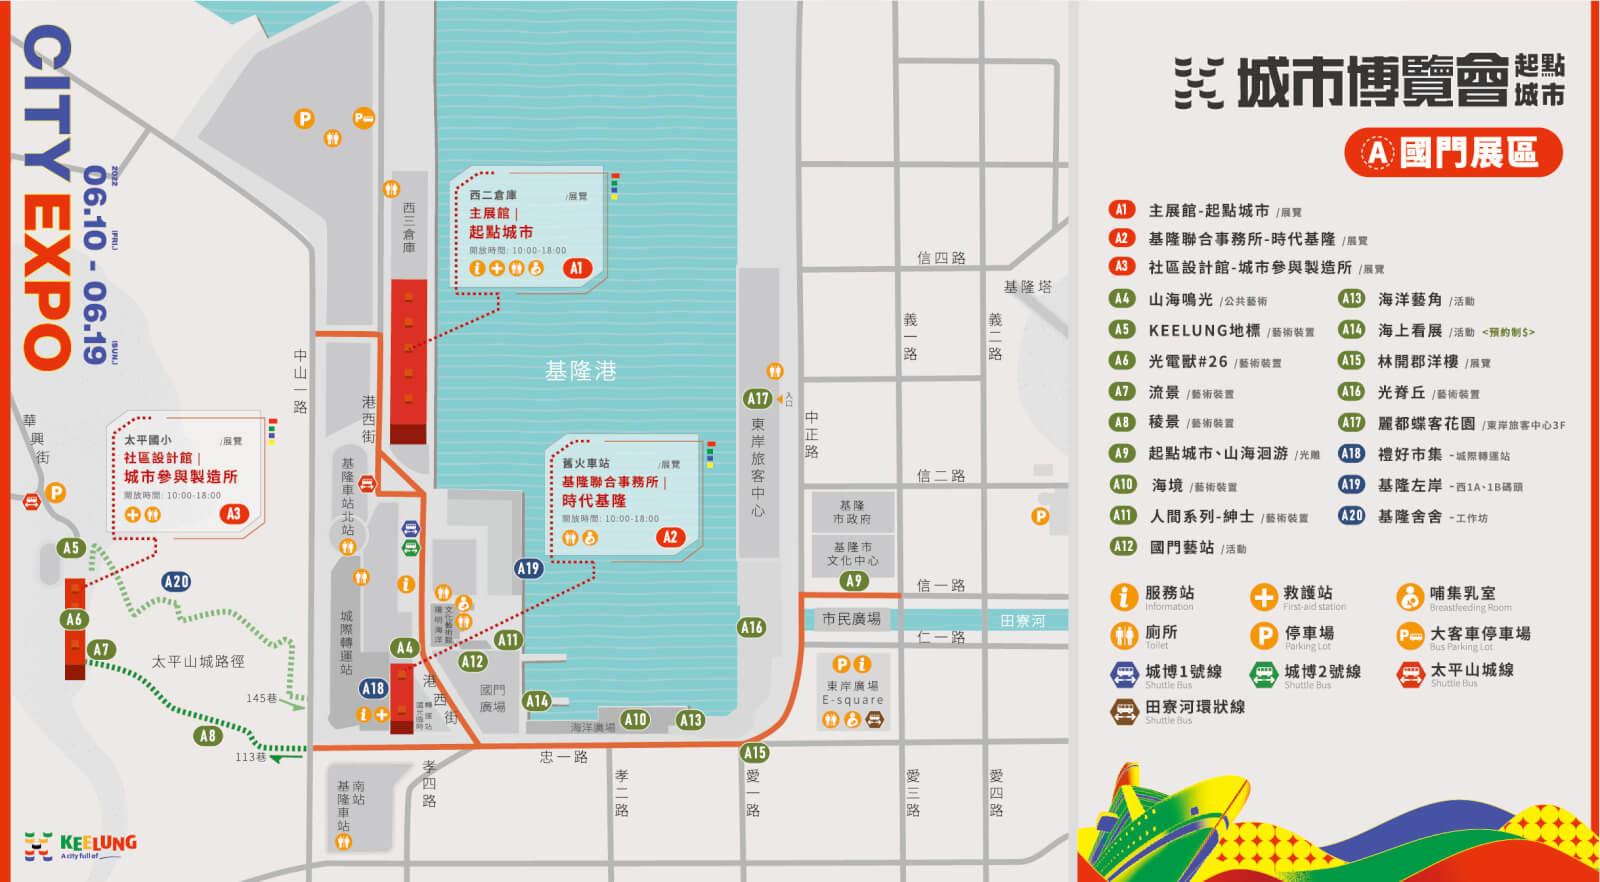 基隆2022城市博覽會起點城市「A 國門展區」地圖